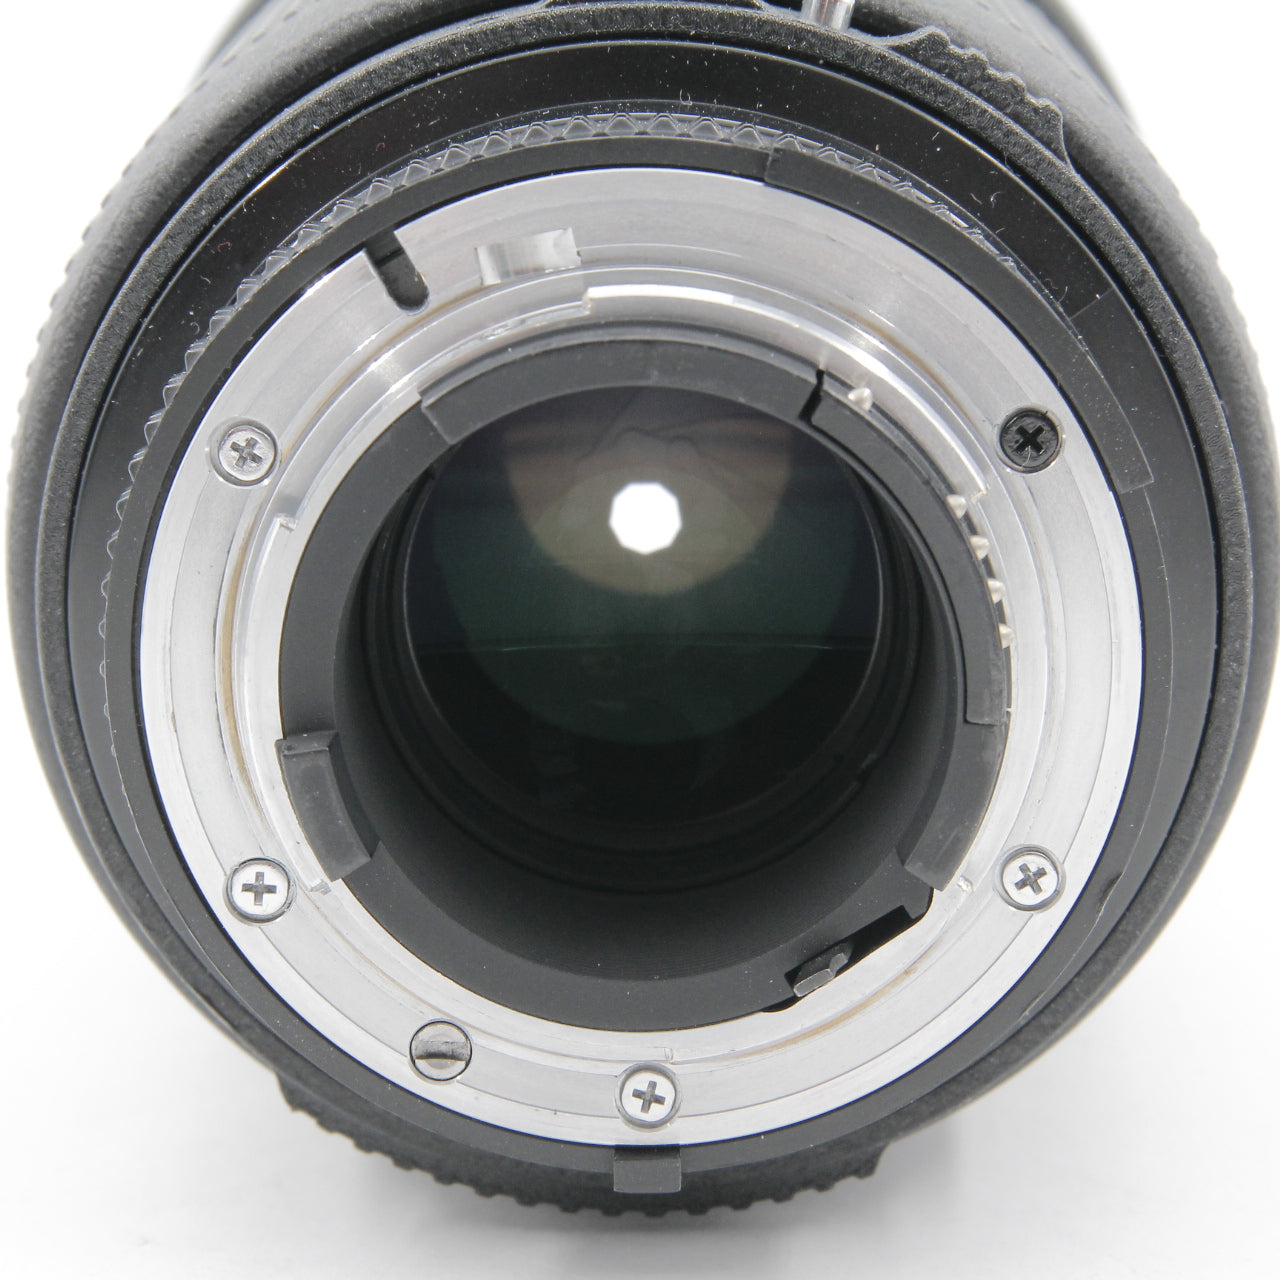 *** USED *** Nikon AF Nikkor 80-200mm f/2.8 D ED Push-Pull Lens